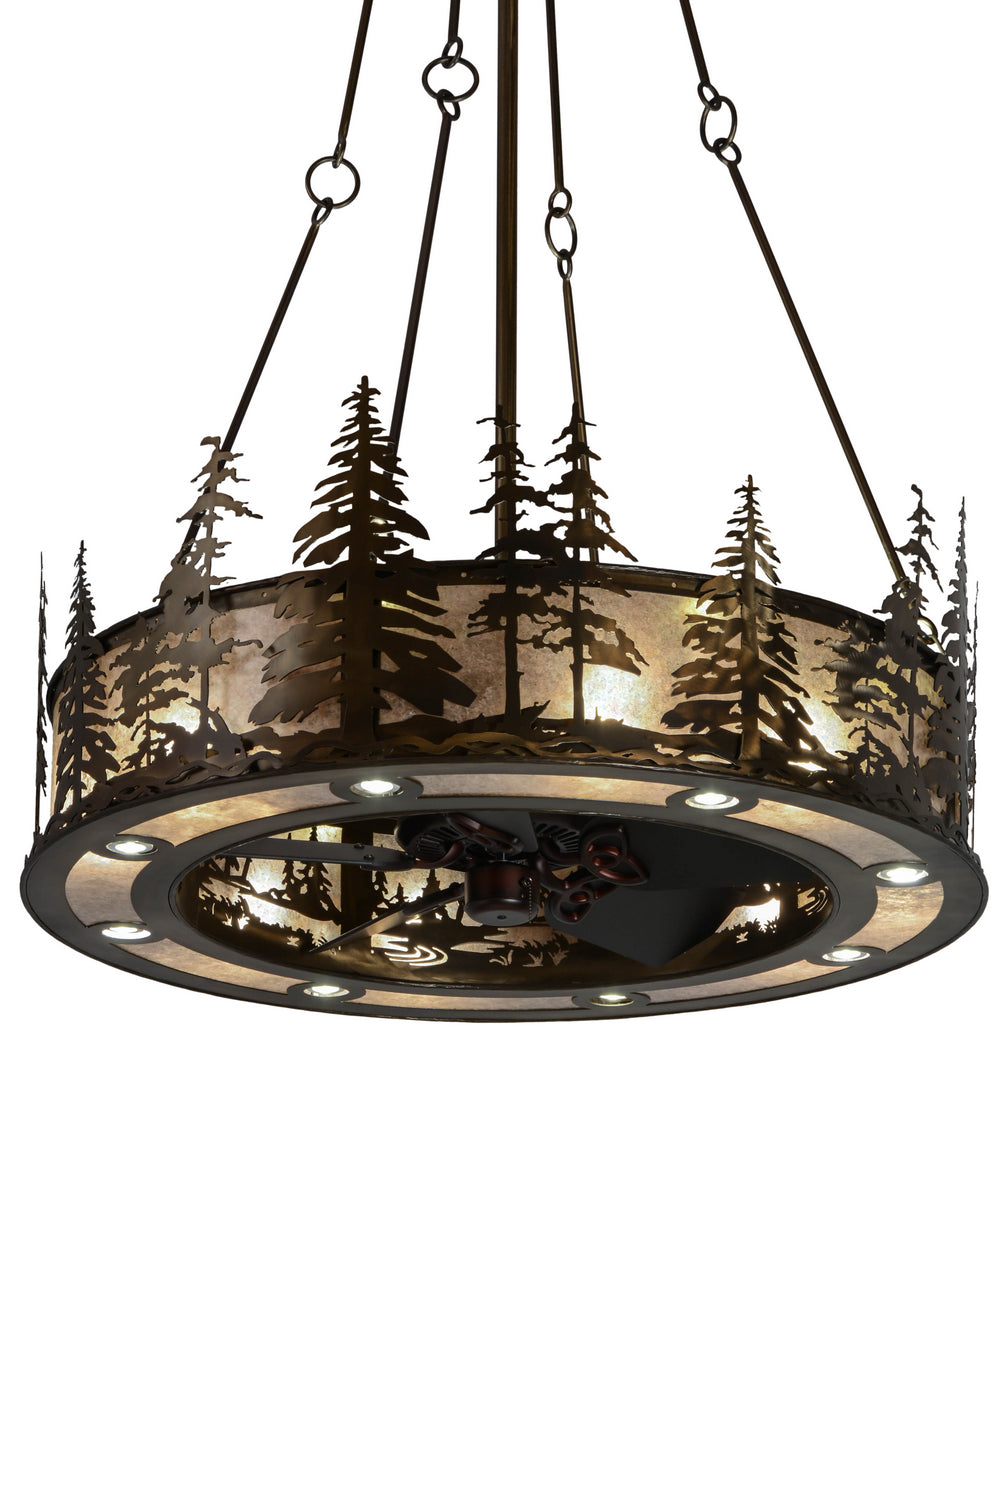 Meyda Tiffany Tall Pines 180491 Ceiling Fan - Antique Copper